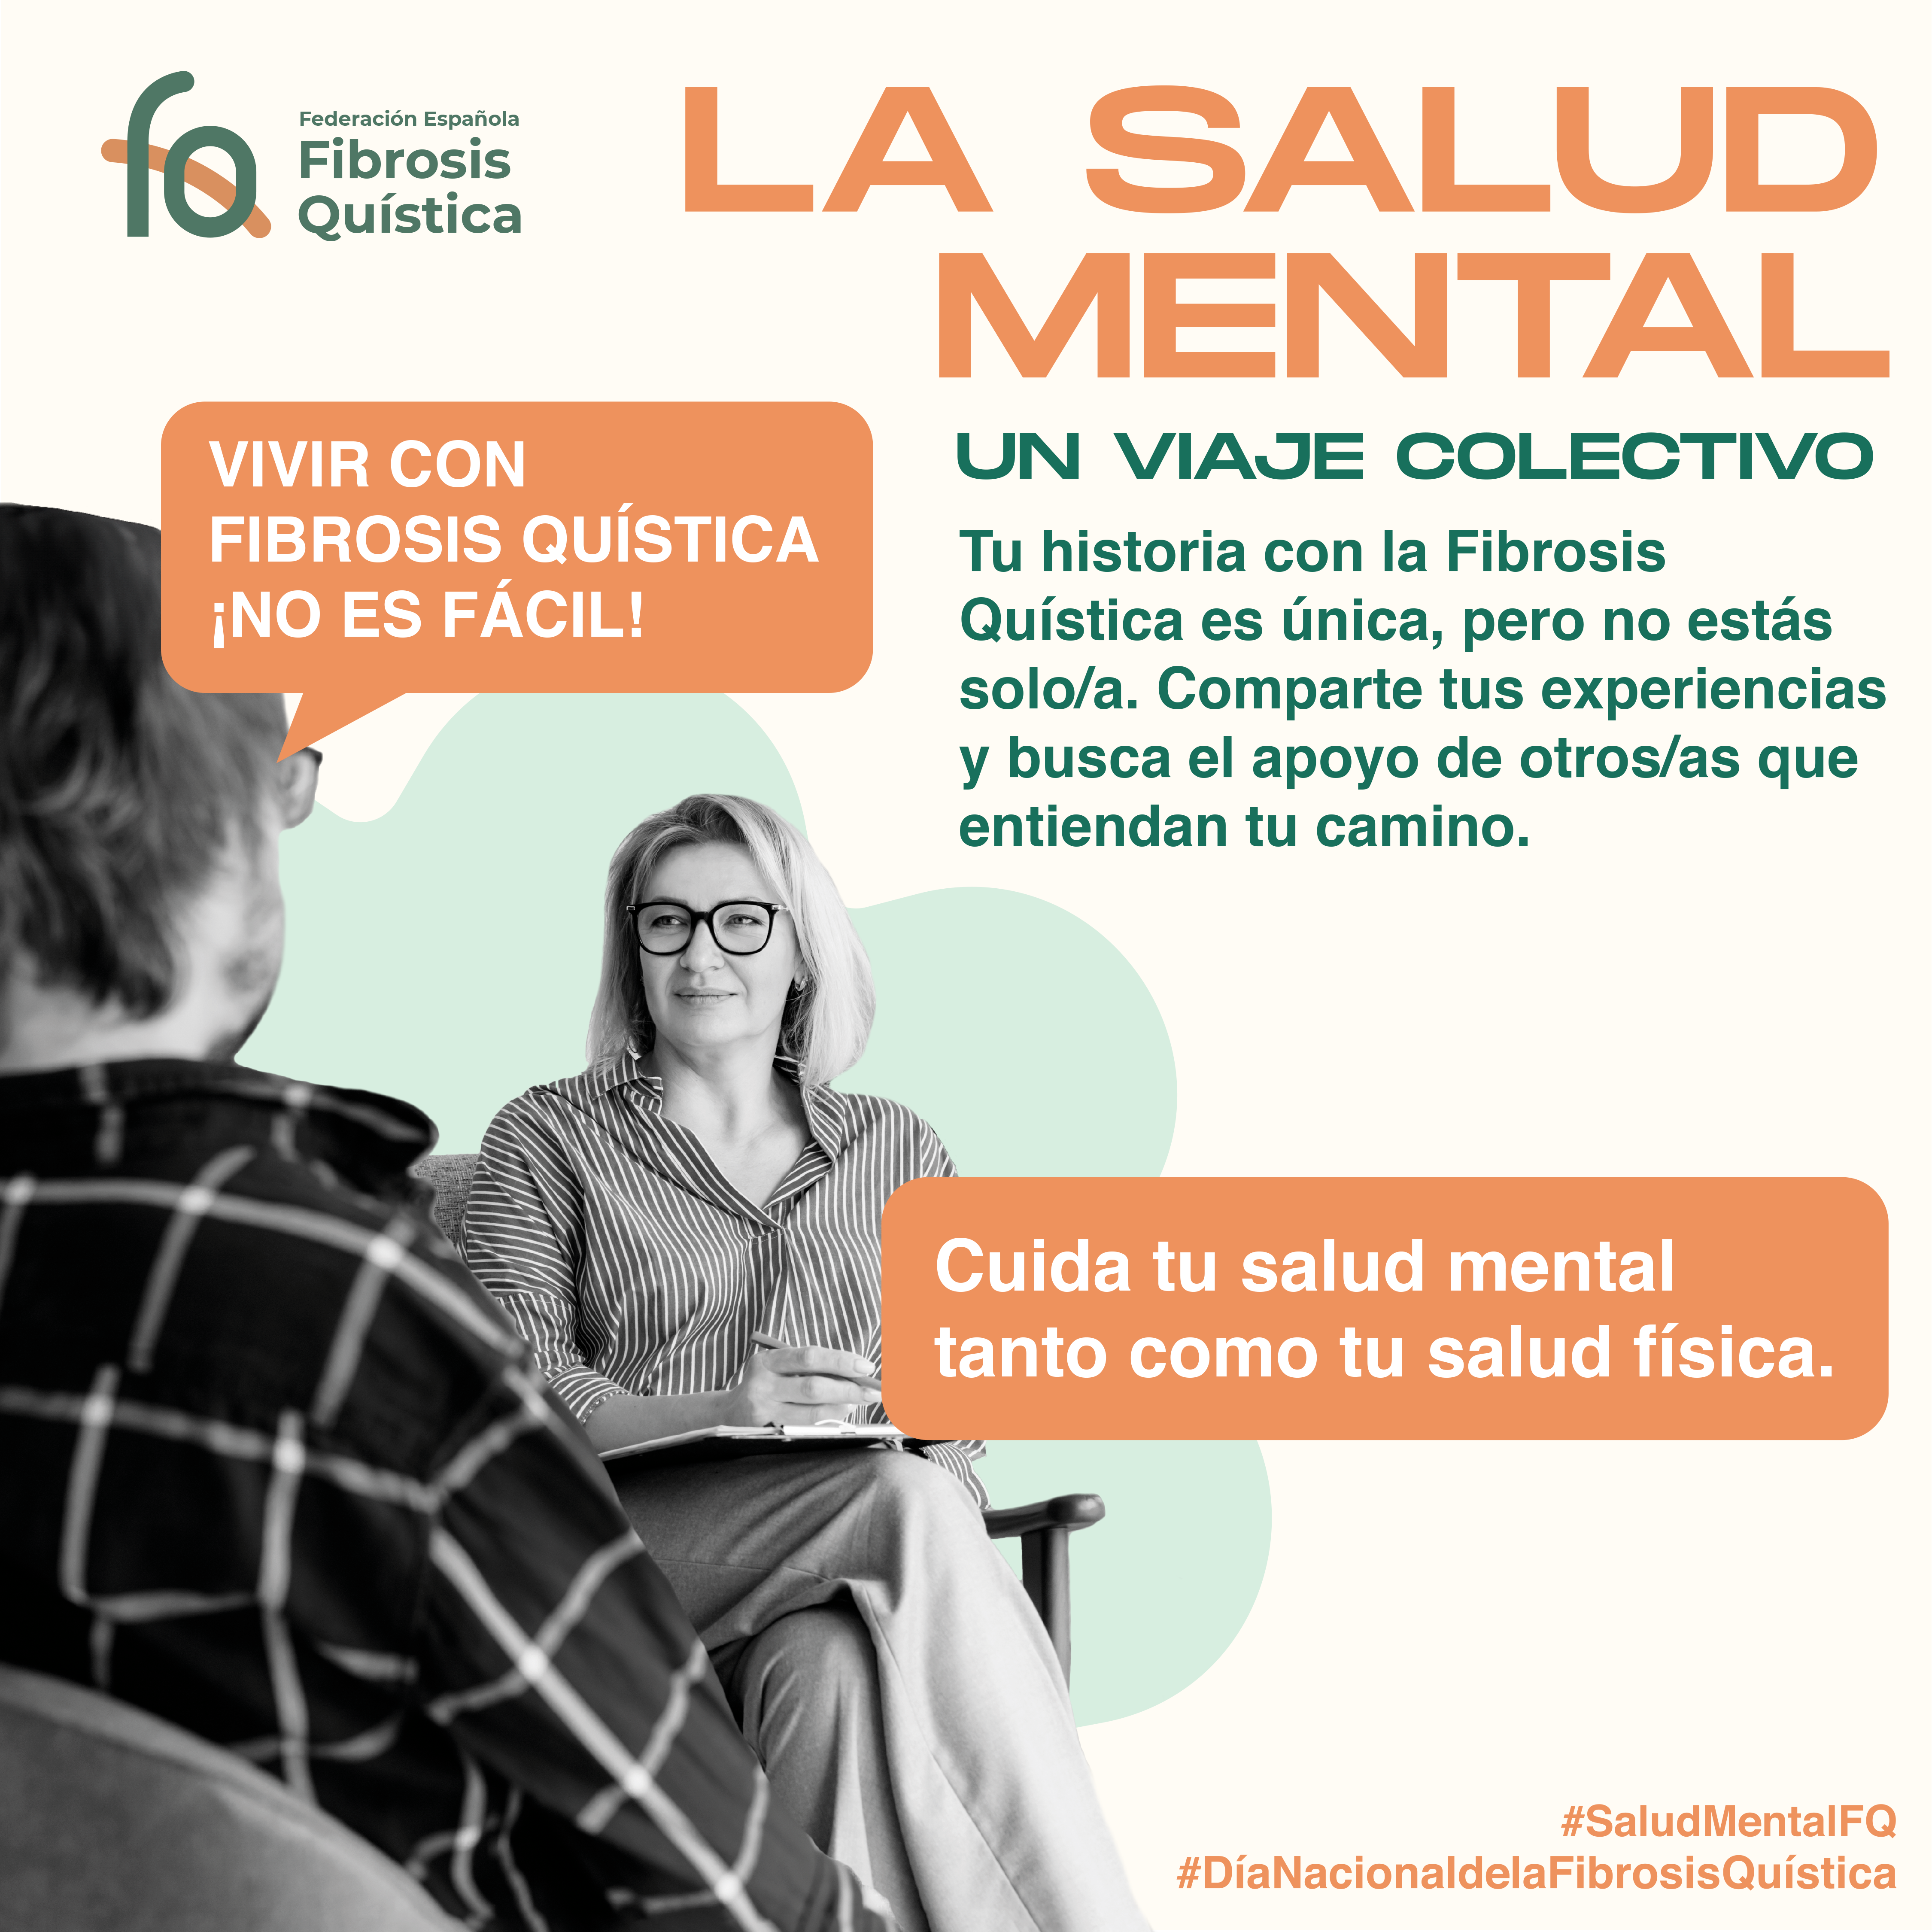 La Federación Española y la Asociación Gallega de Fibrosis Quística reclaman más apoyo en salud mental para atender las necesidades de las personas con FQ y sus familias.